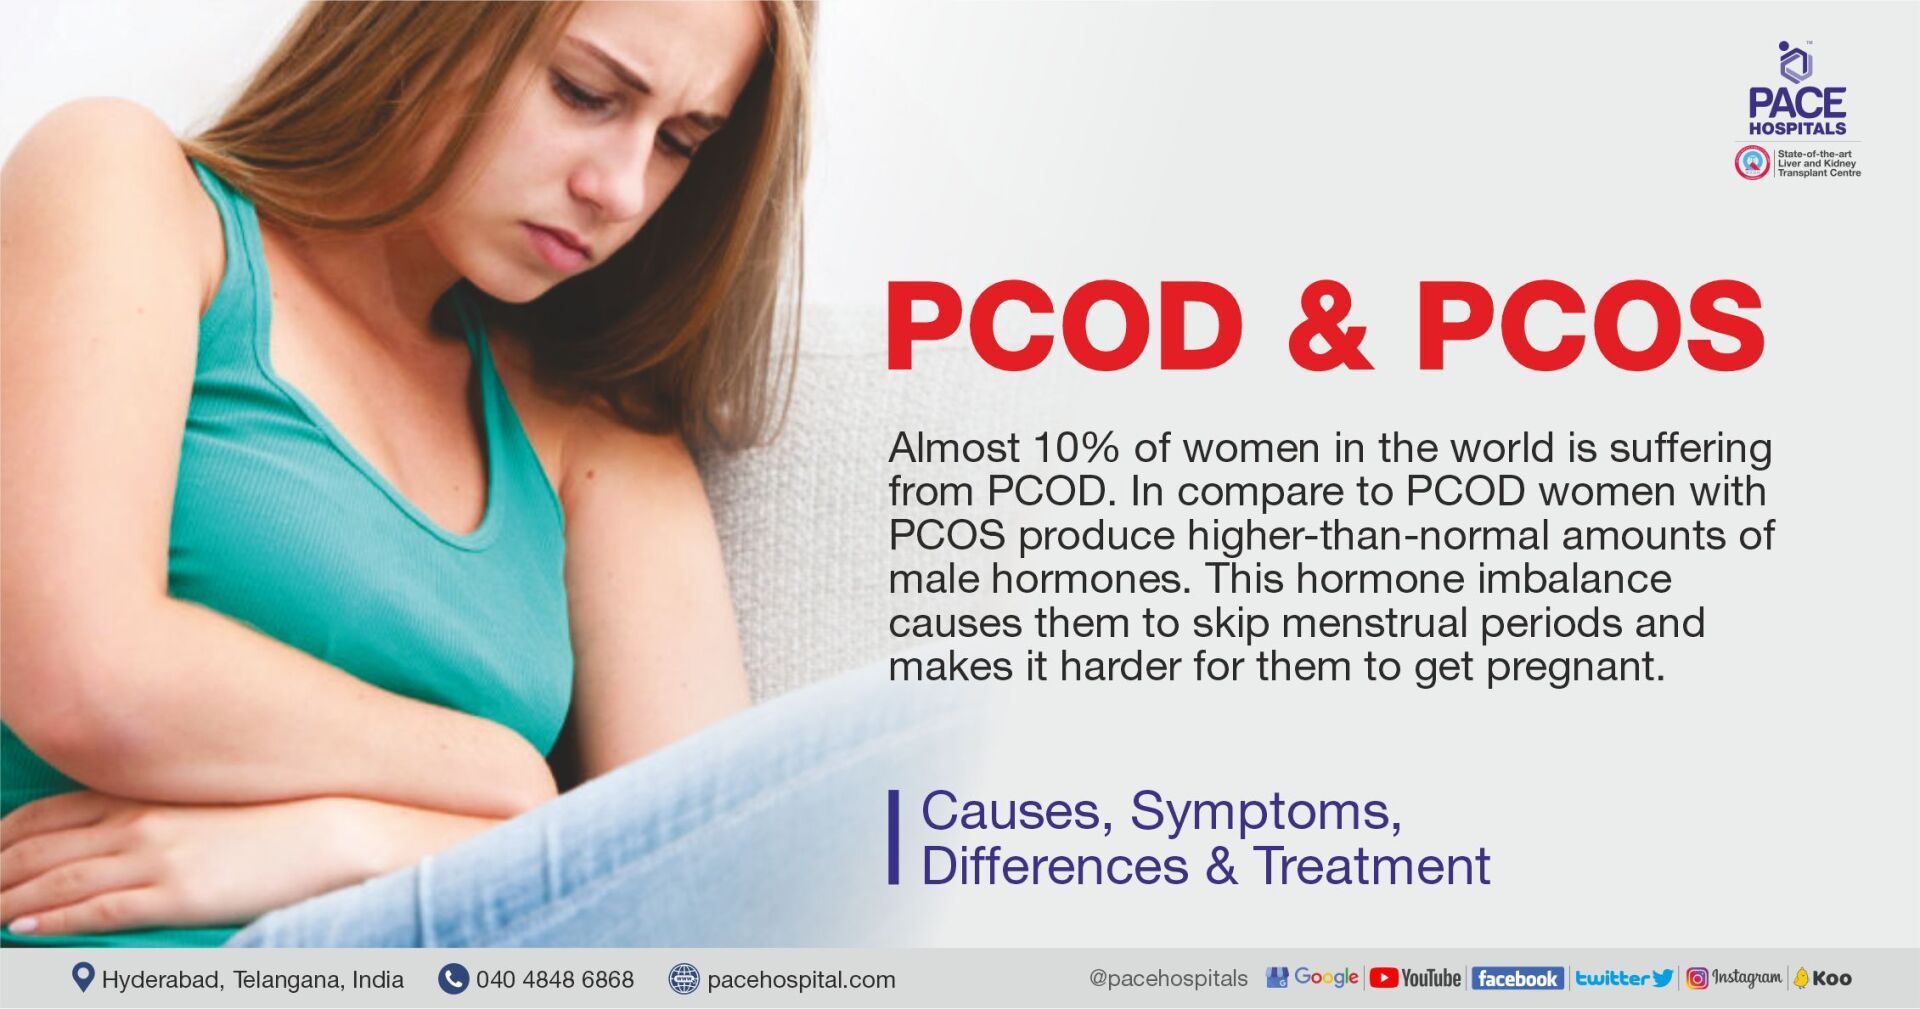 PMS Symptoms vs. Pregnancy Symptoms: 7 Comparisons